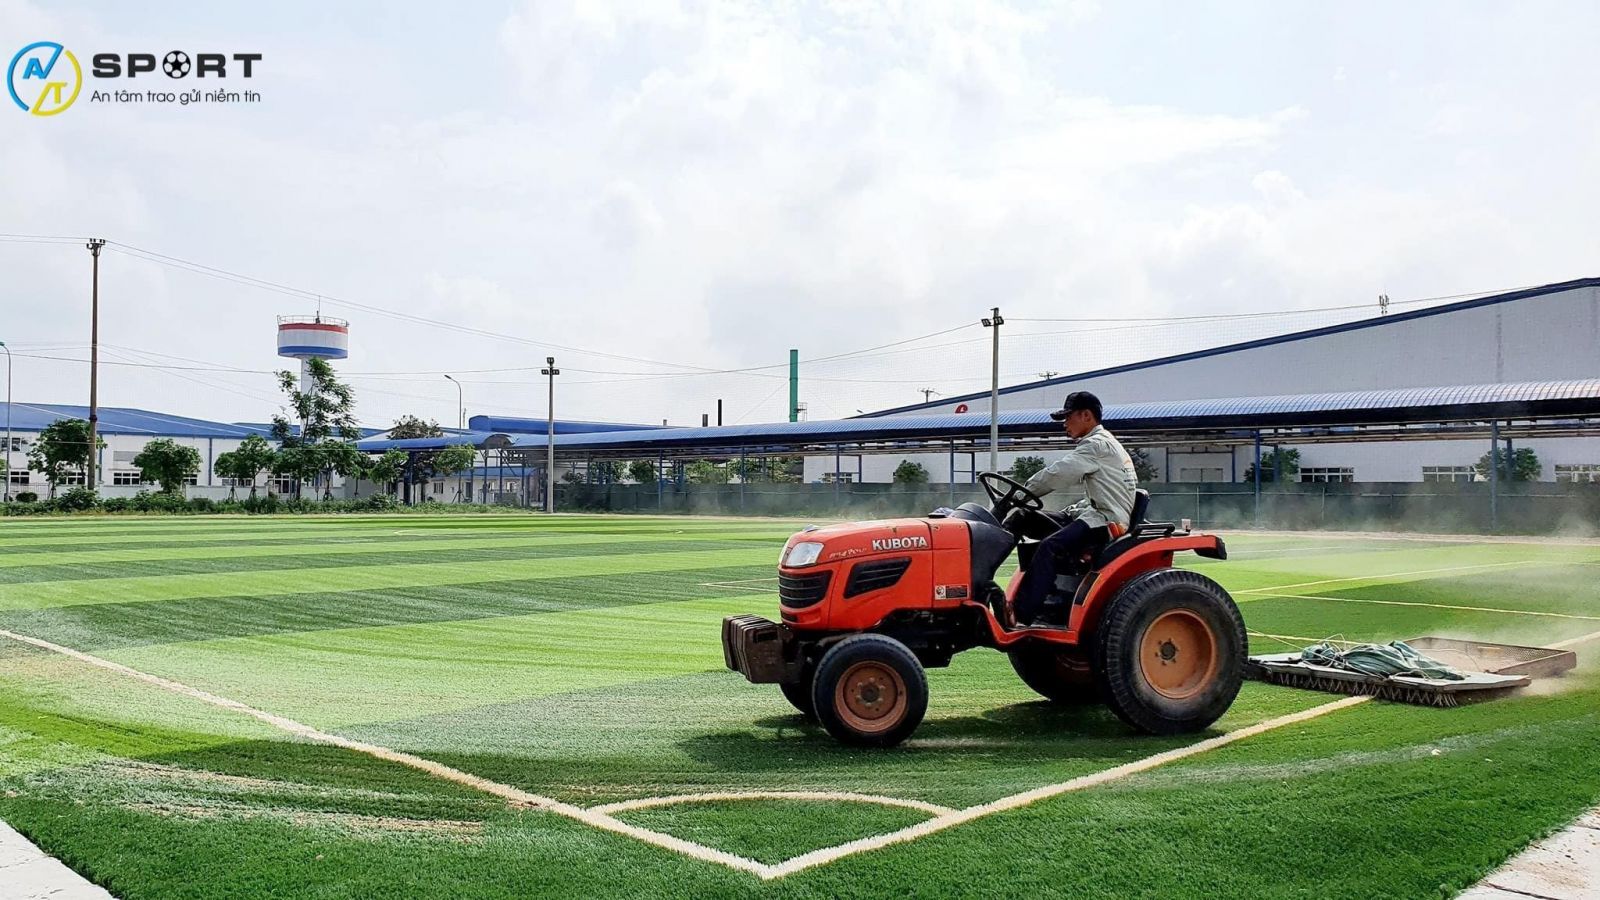 Thi công sân bóng nền cỏ nhân tạo ở Hoài Nhơn, Bình Định